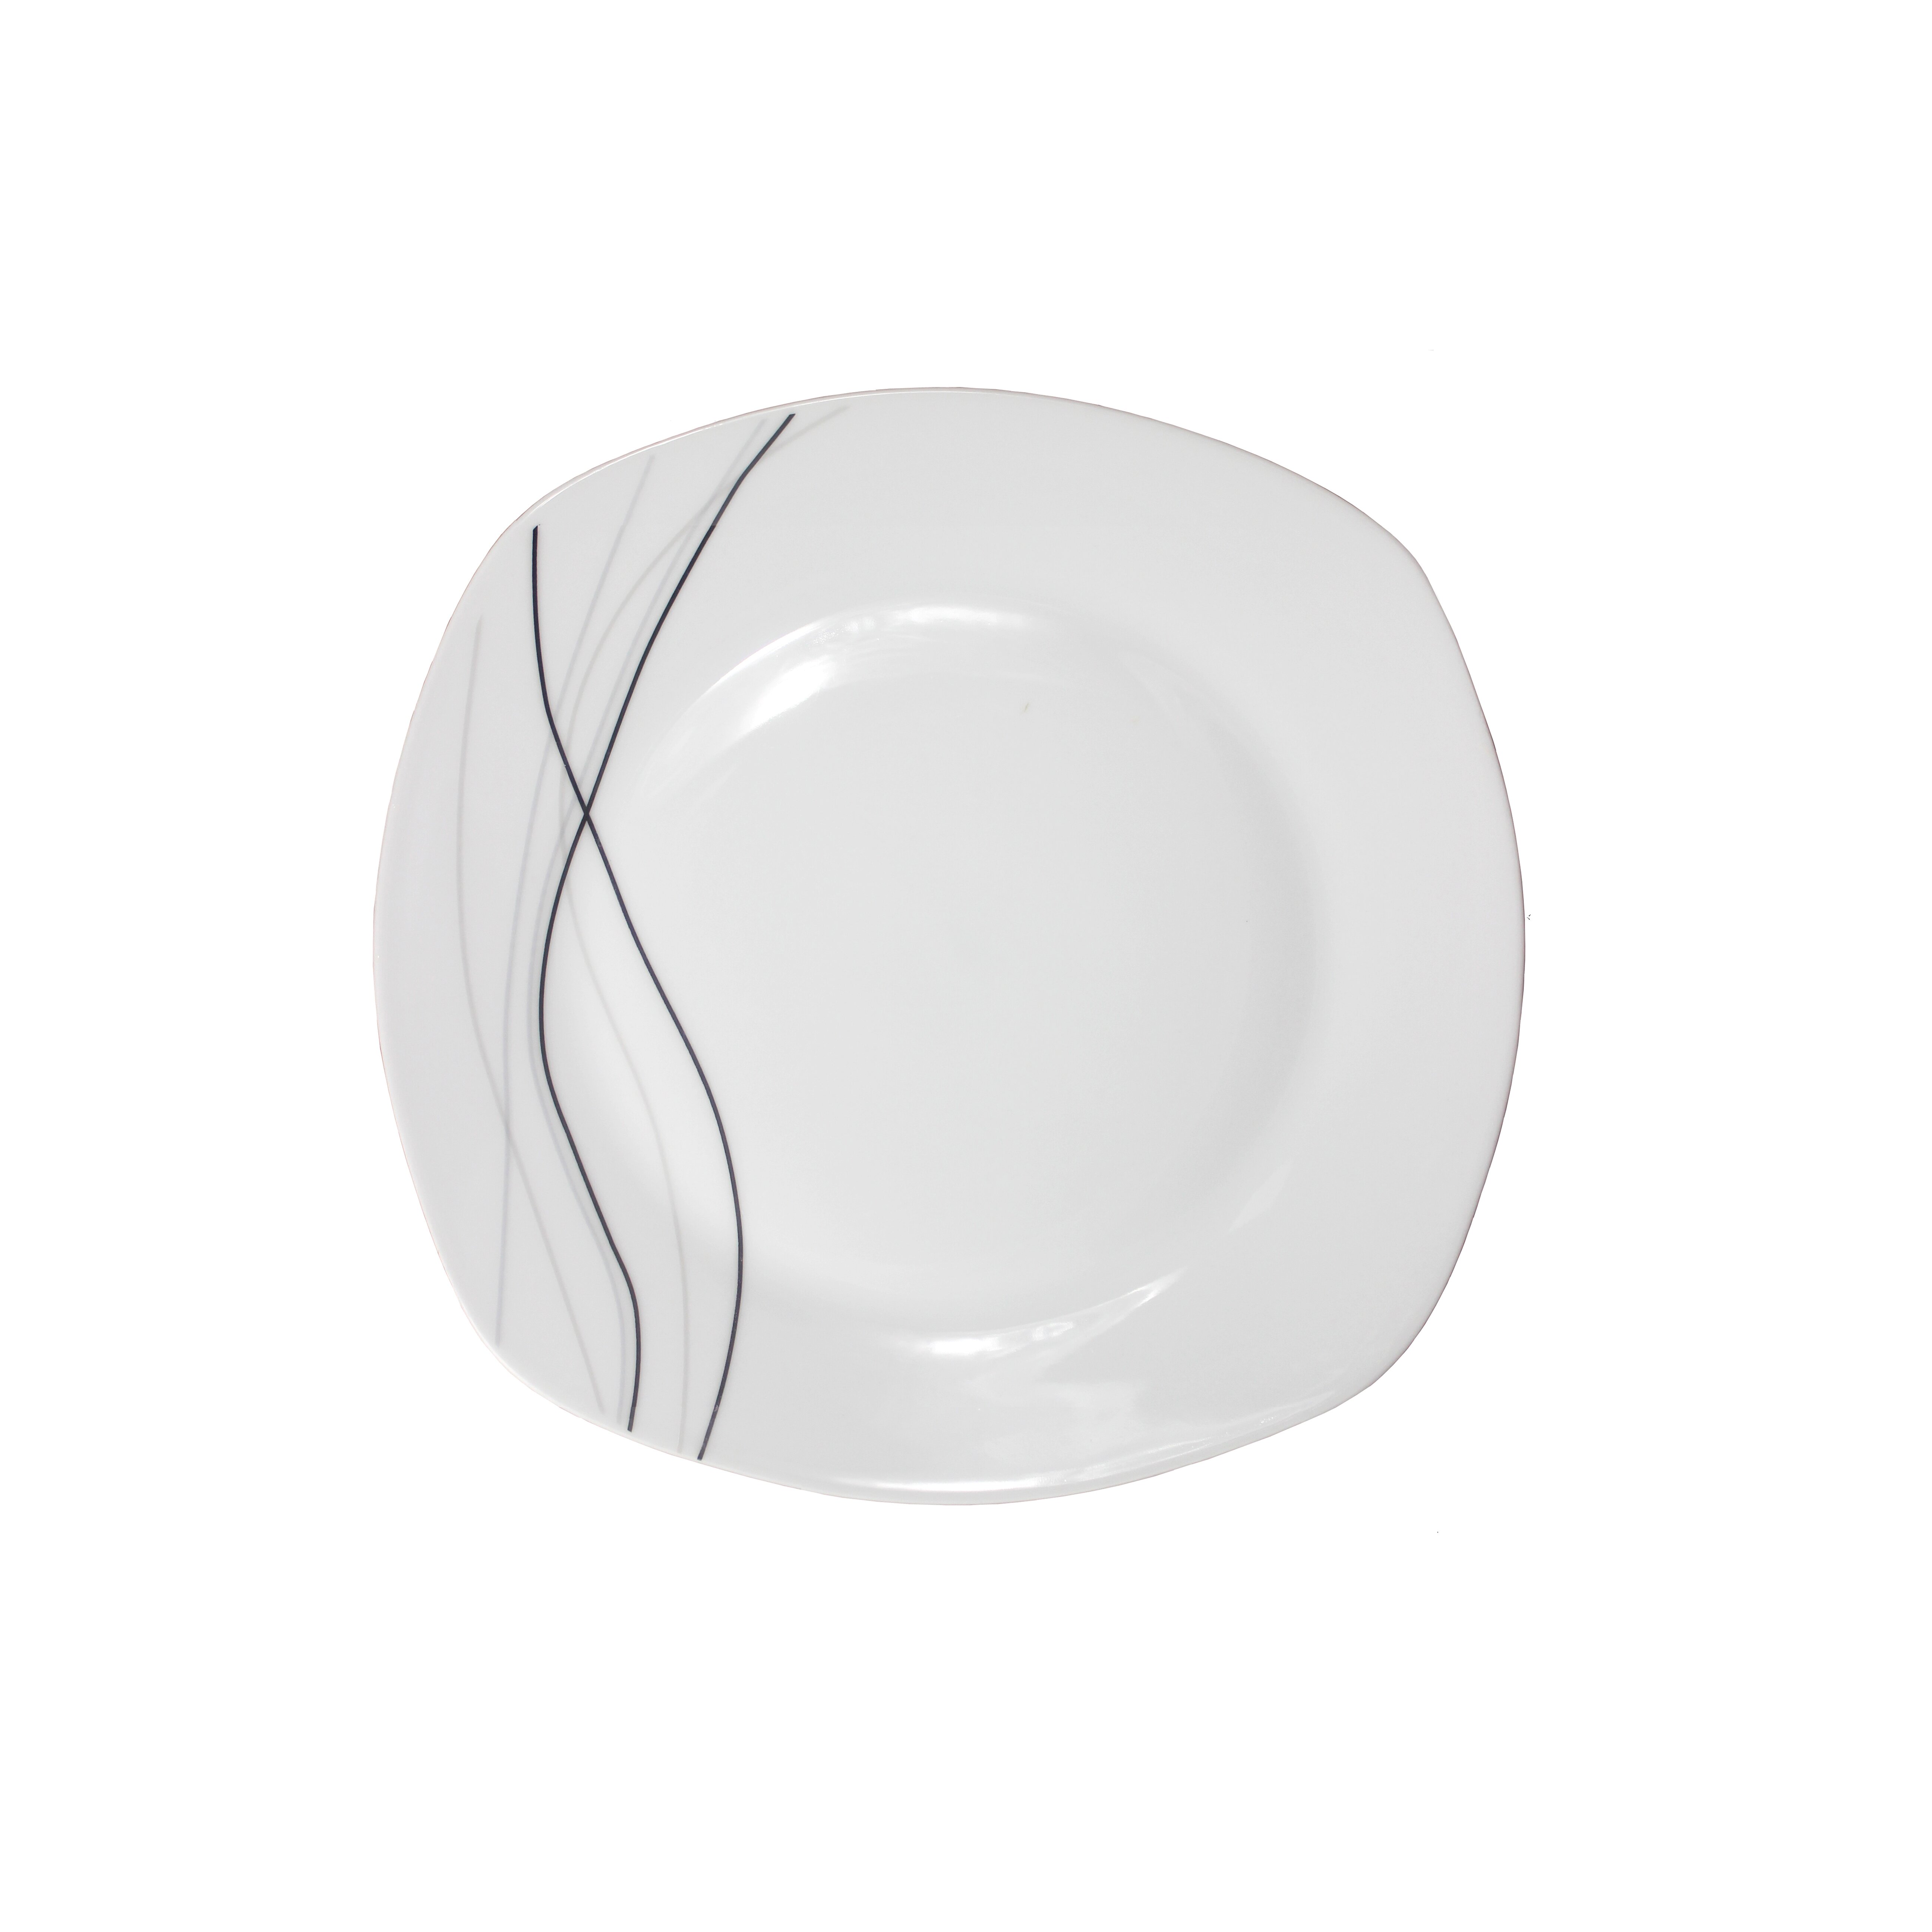 Lorren Home Trends Porcelain 20 Piece Dinnerware Set & Reviews | Wayfair